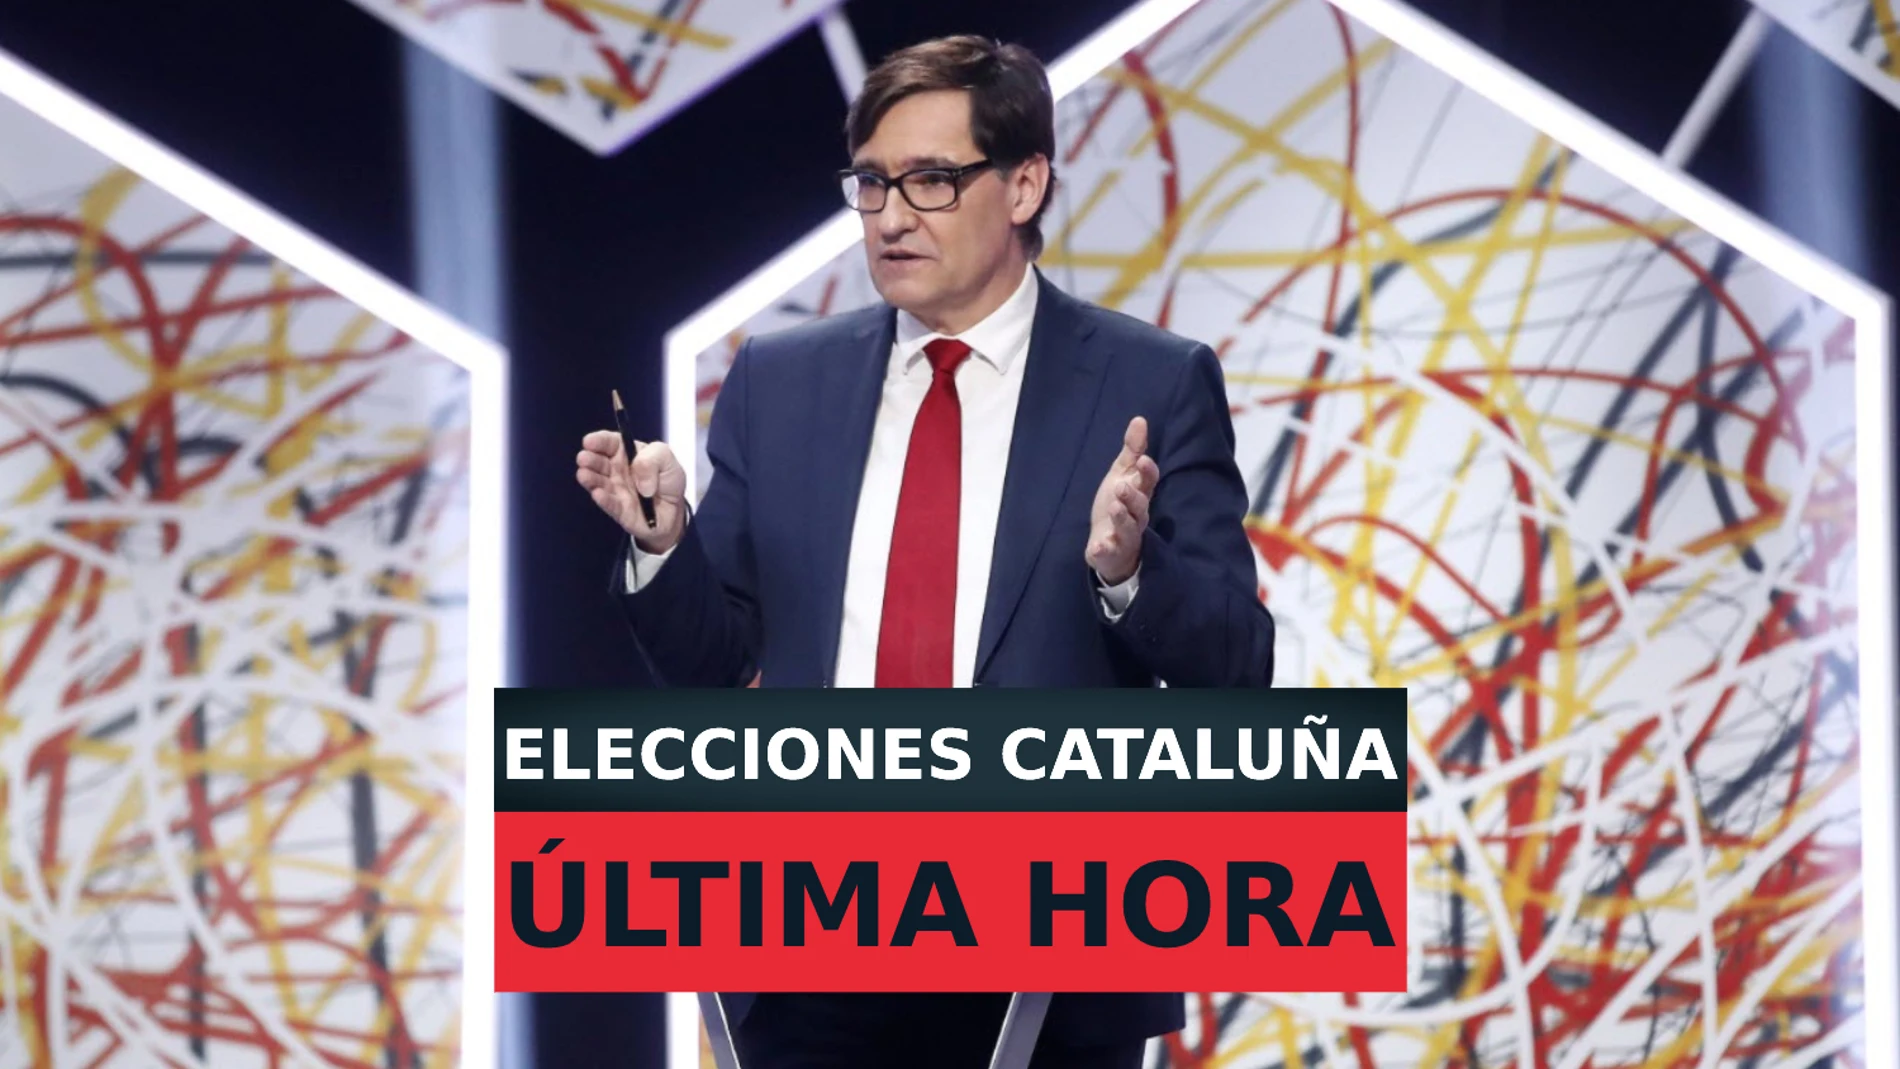 Última hora sobre las Elecciones Catalanas 2021 y El Debat de laSexta, en directo